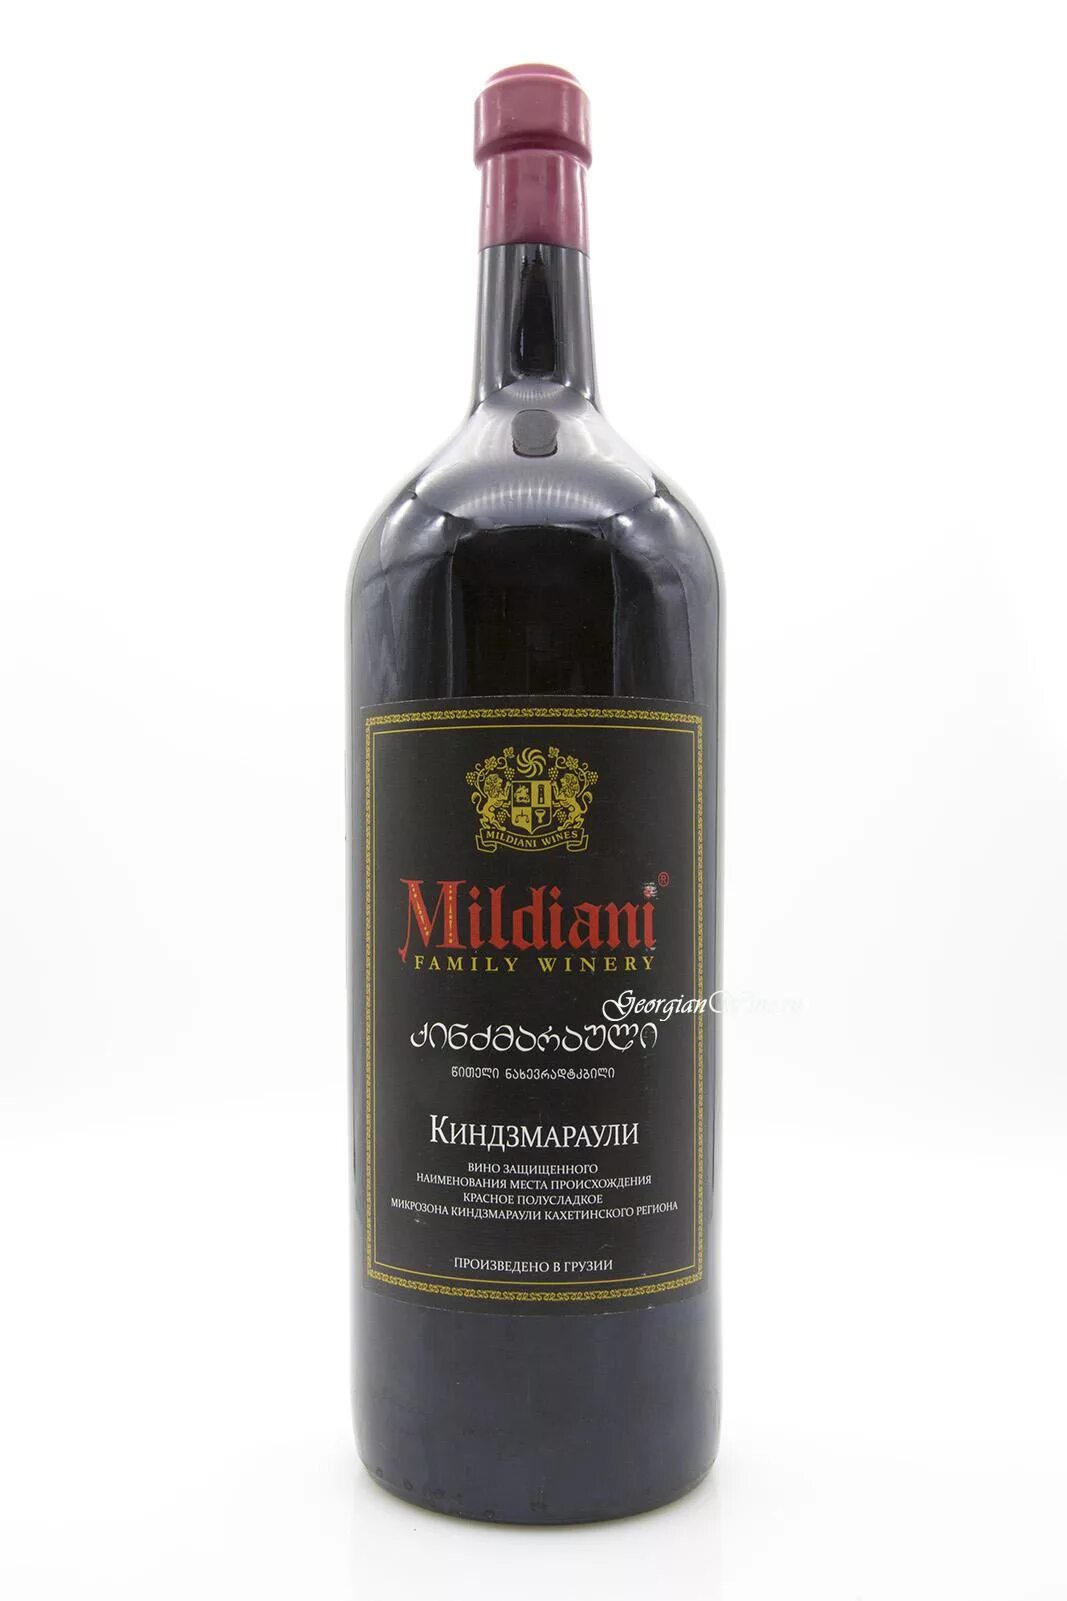 Вино Киндзмараули Милдиани красное. Вино Саперави Милдиани. Алазанская Долина вино Mildiani. Вино Киндзмараули Mildiani красное полусладкое. Купить красное грузинское вино